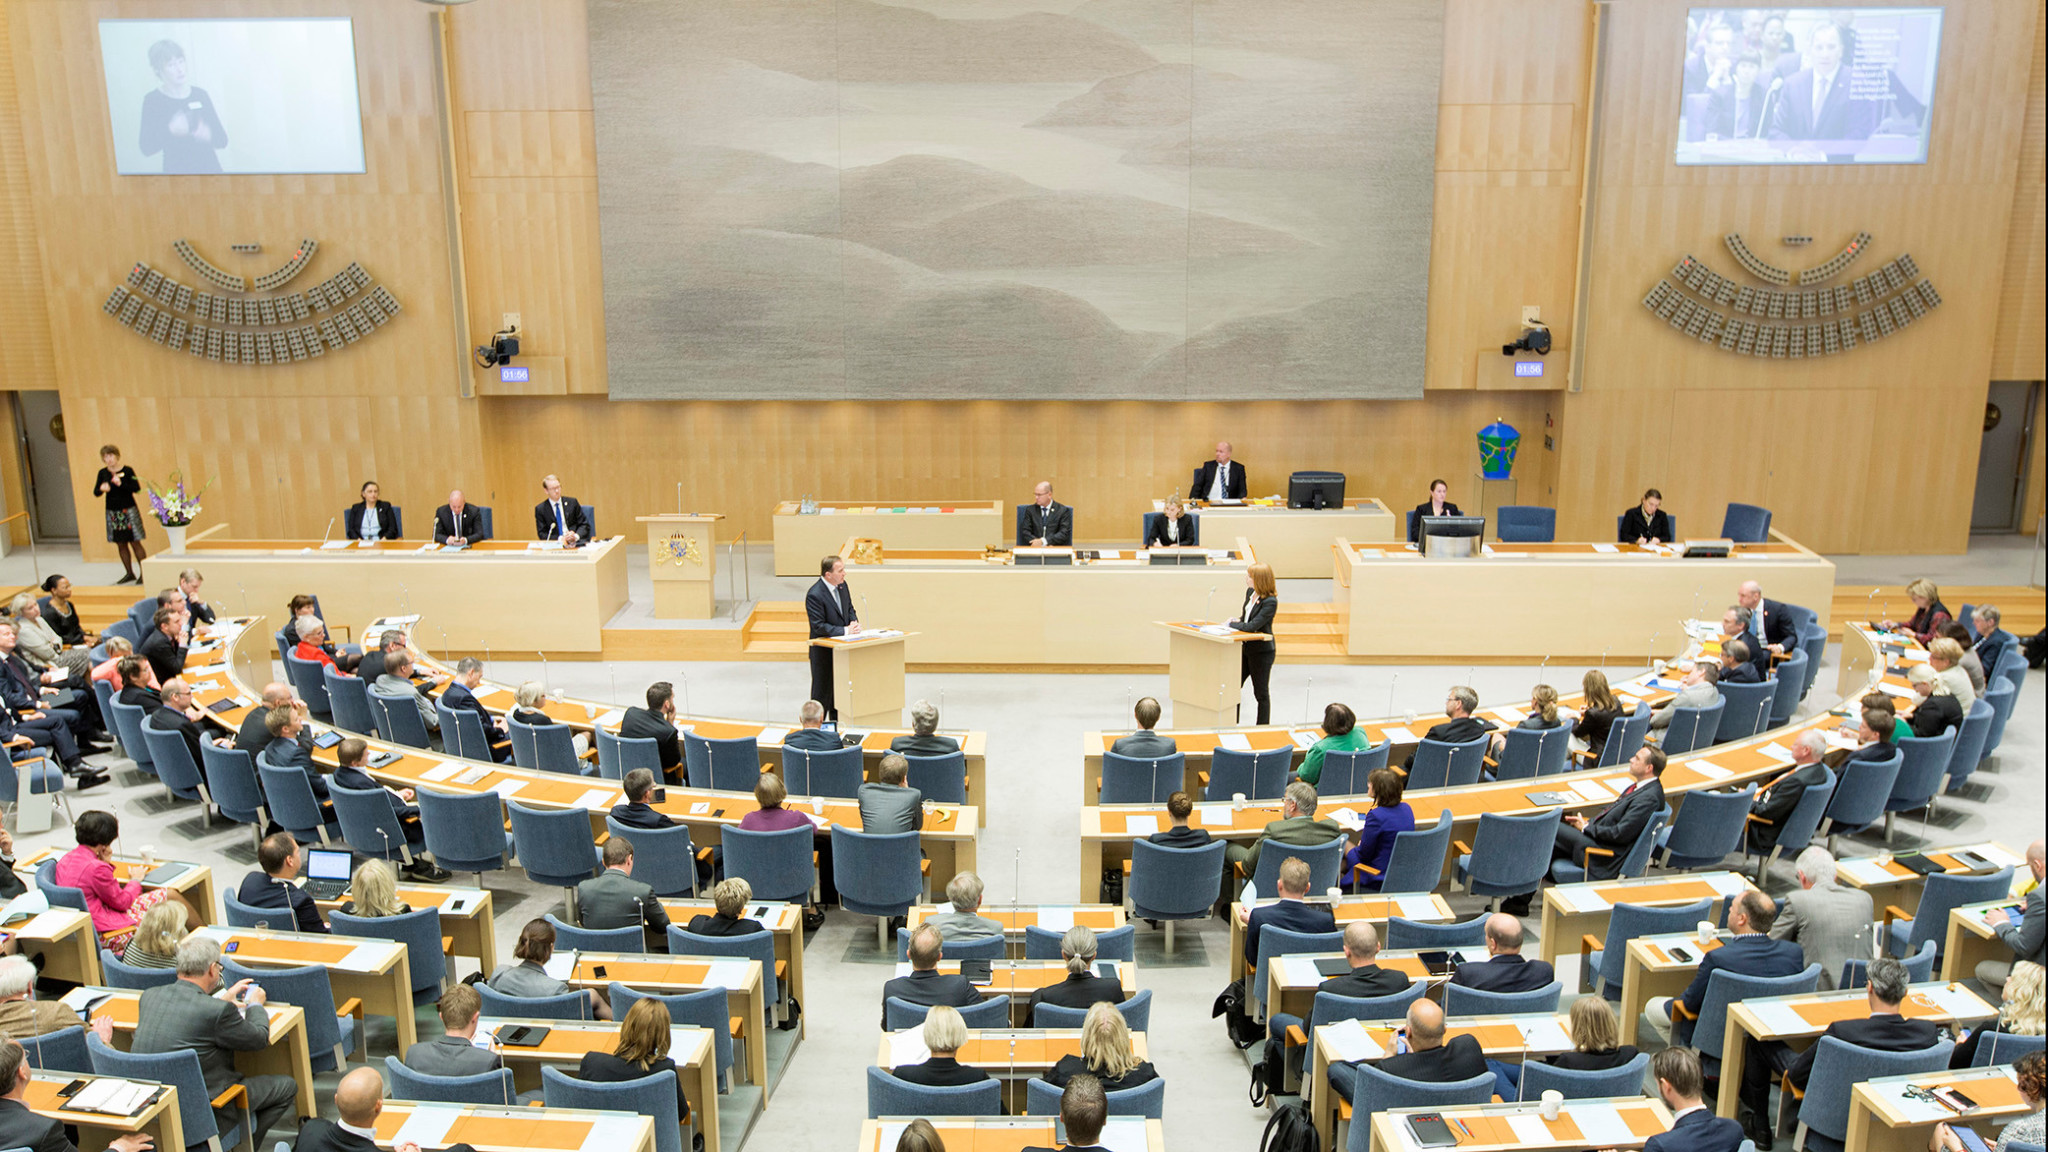 1883 Swedish parliament 2018 Melker Dahlstrand Riksdagsf%c3%b6rvaltningen